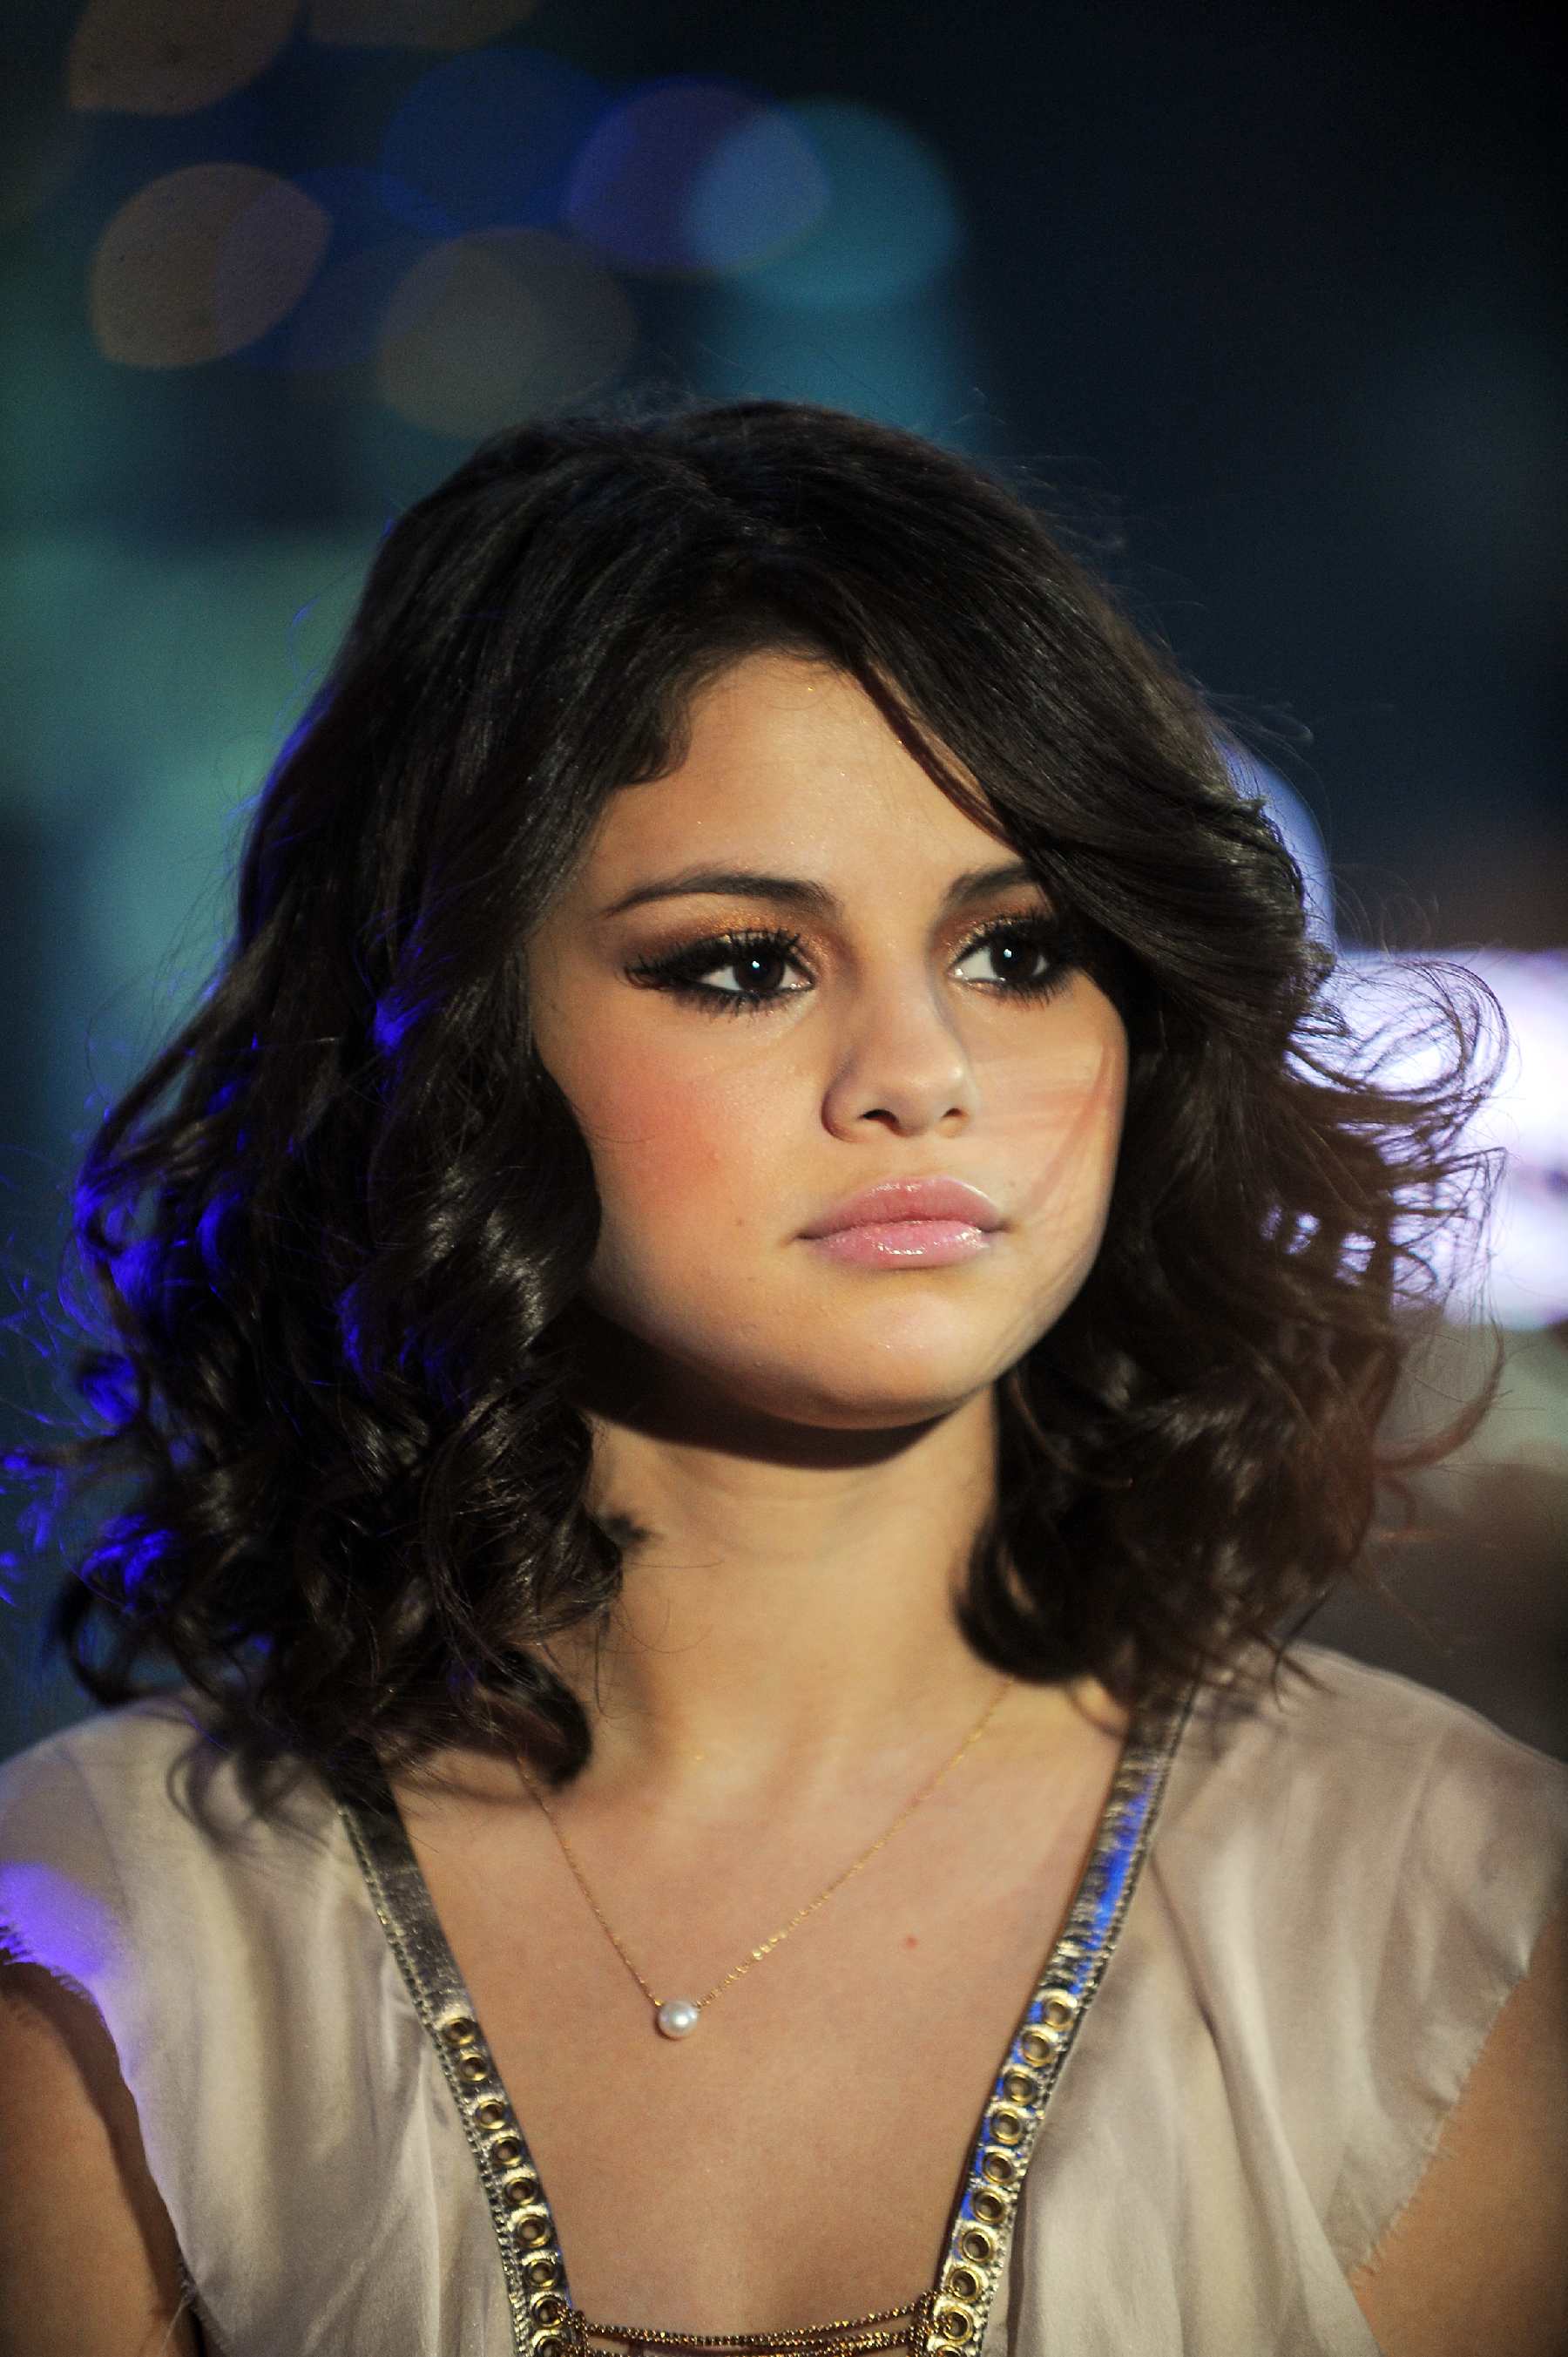 Selena Gomez in NYE In NYC 2012